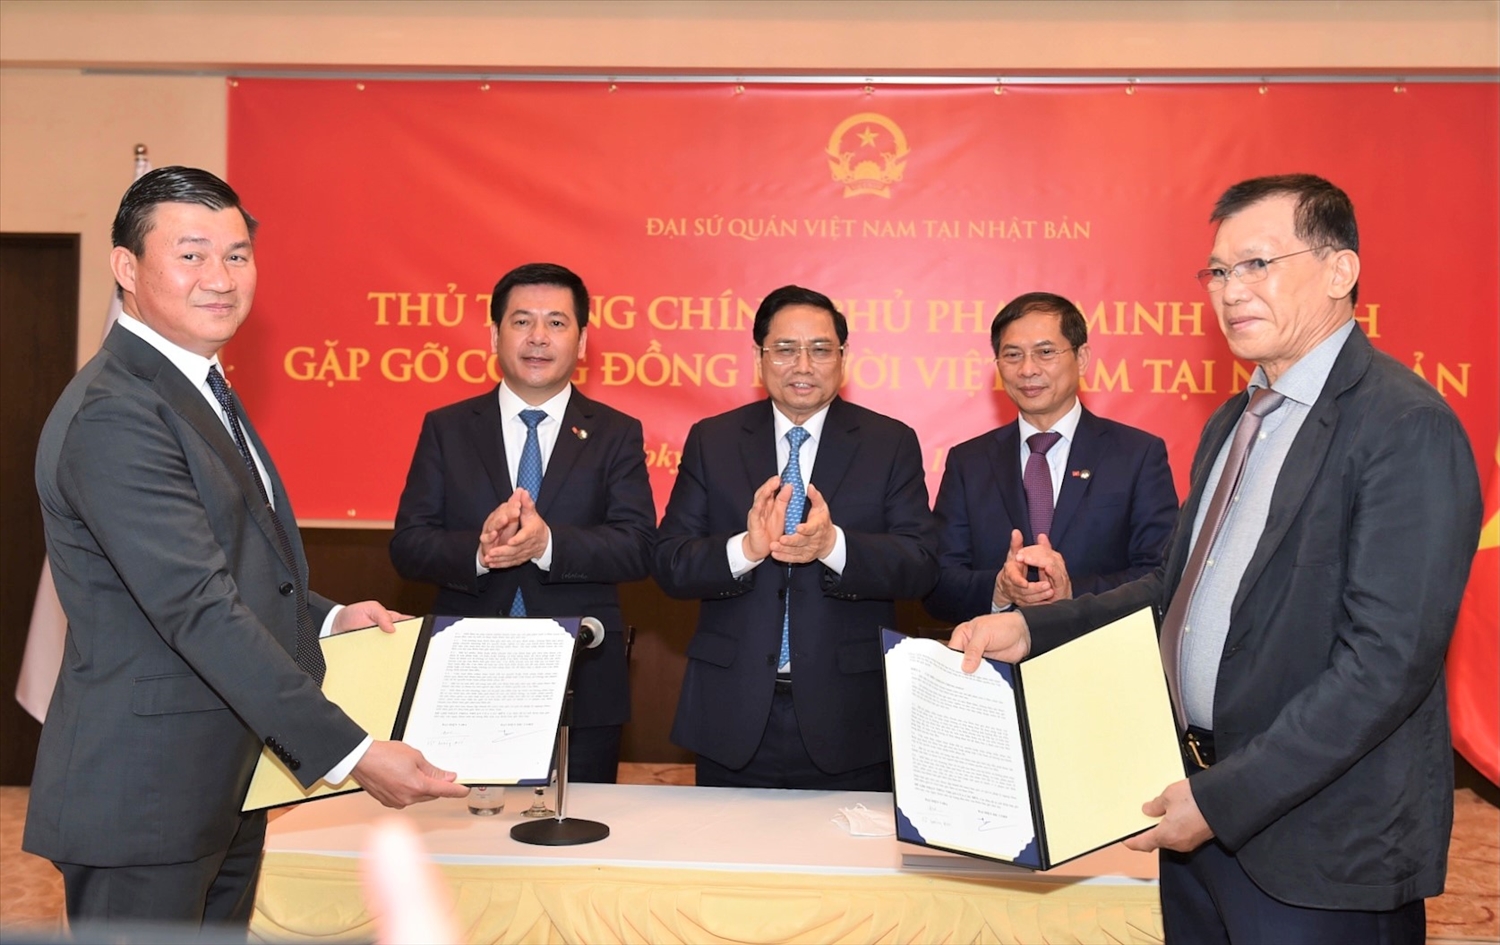 Thủ tướng chứng kiến trao văn bản hợp tác giữa công ty DIC và Hiệp hội Doanh nghiệp Việt Nam tại Nhật Bản. Ảnh: VGP/Nhật Bắc